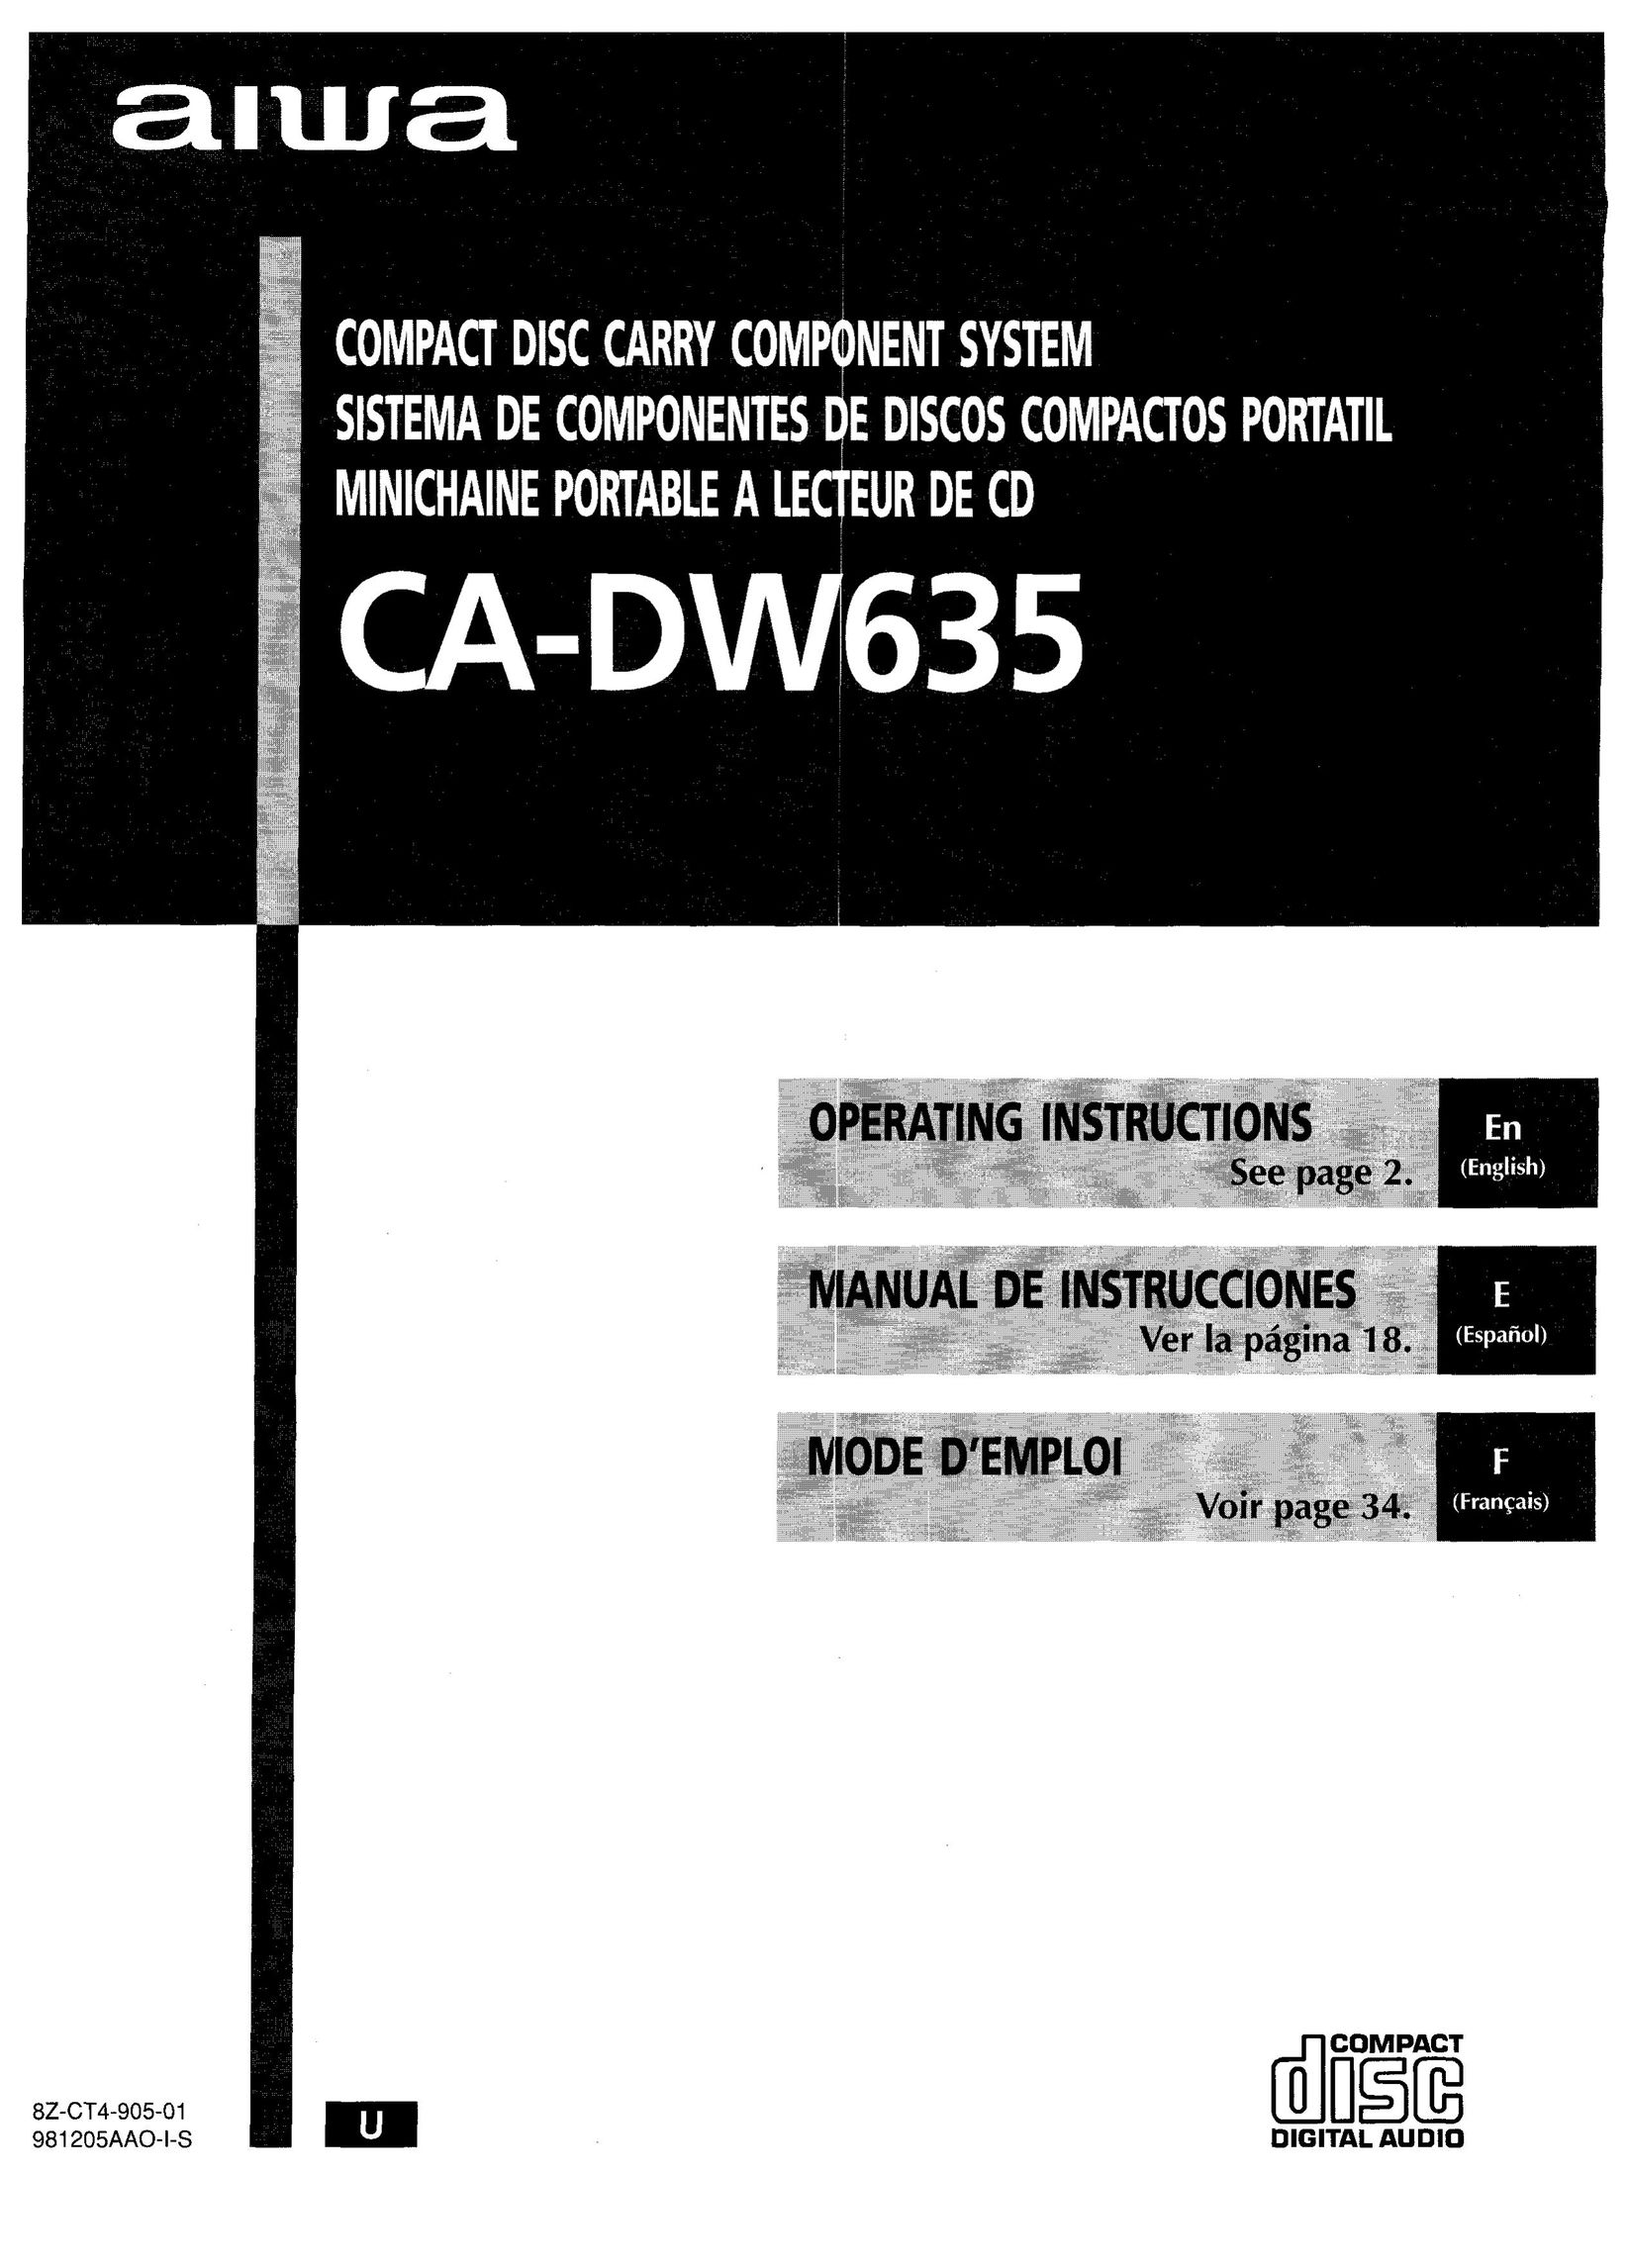 Aiwa CA-DW635 CD Player User Manual